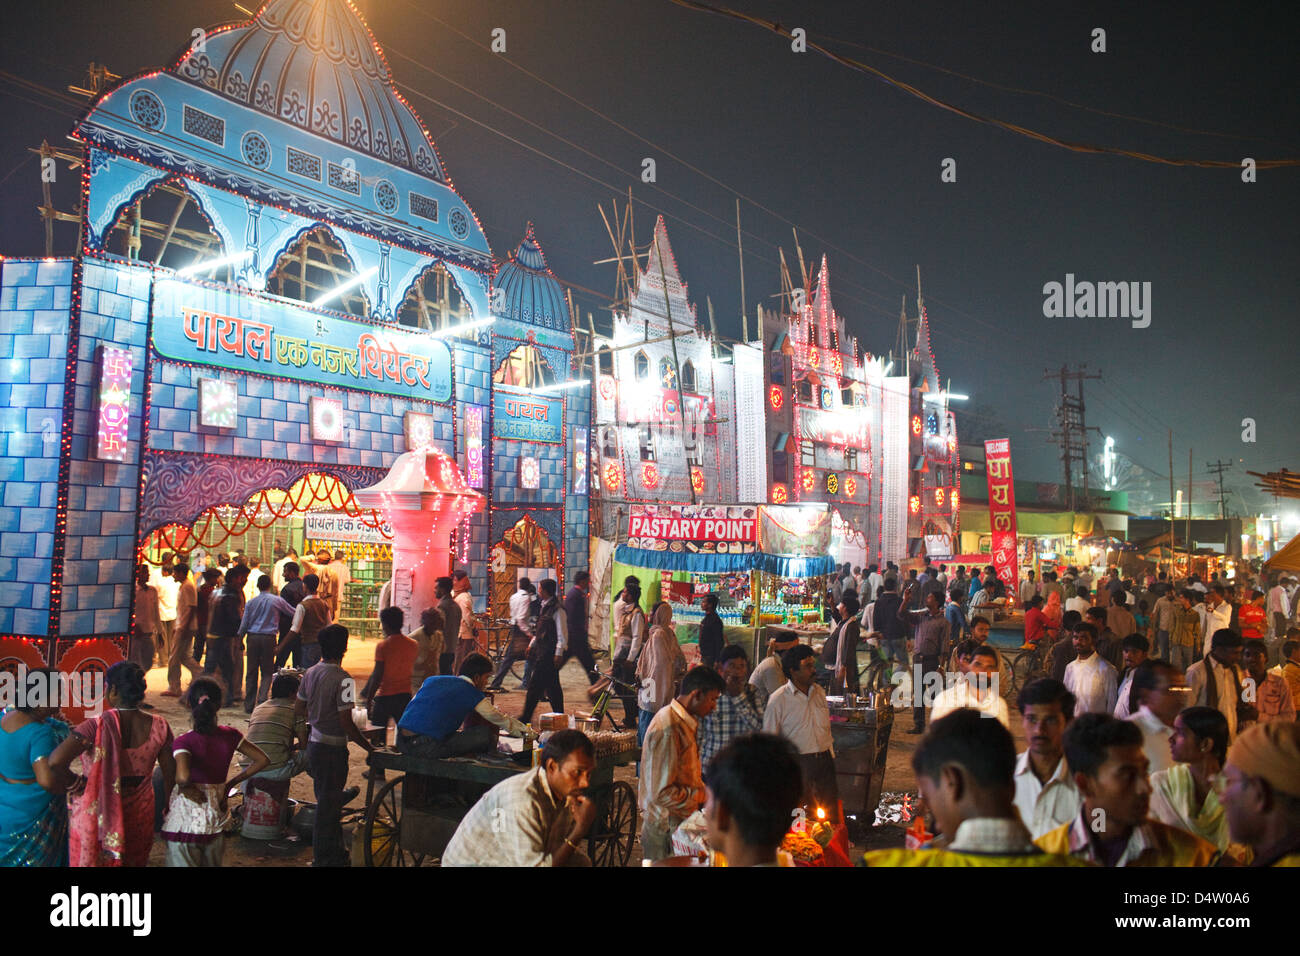 Massen an Sonepur Mela nach Einbruch der Dunkelheit, eine große Messe und Vergnügungspark, Sonepur (Sonpur), Bihar Zustand, Indien Stockfoto